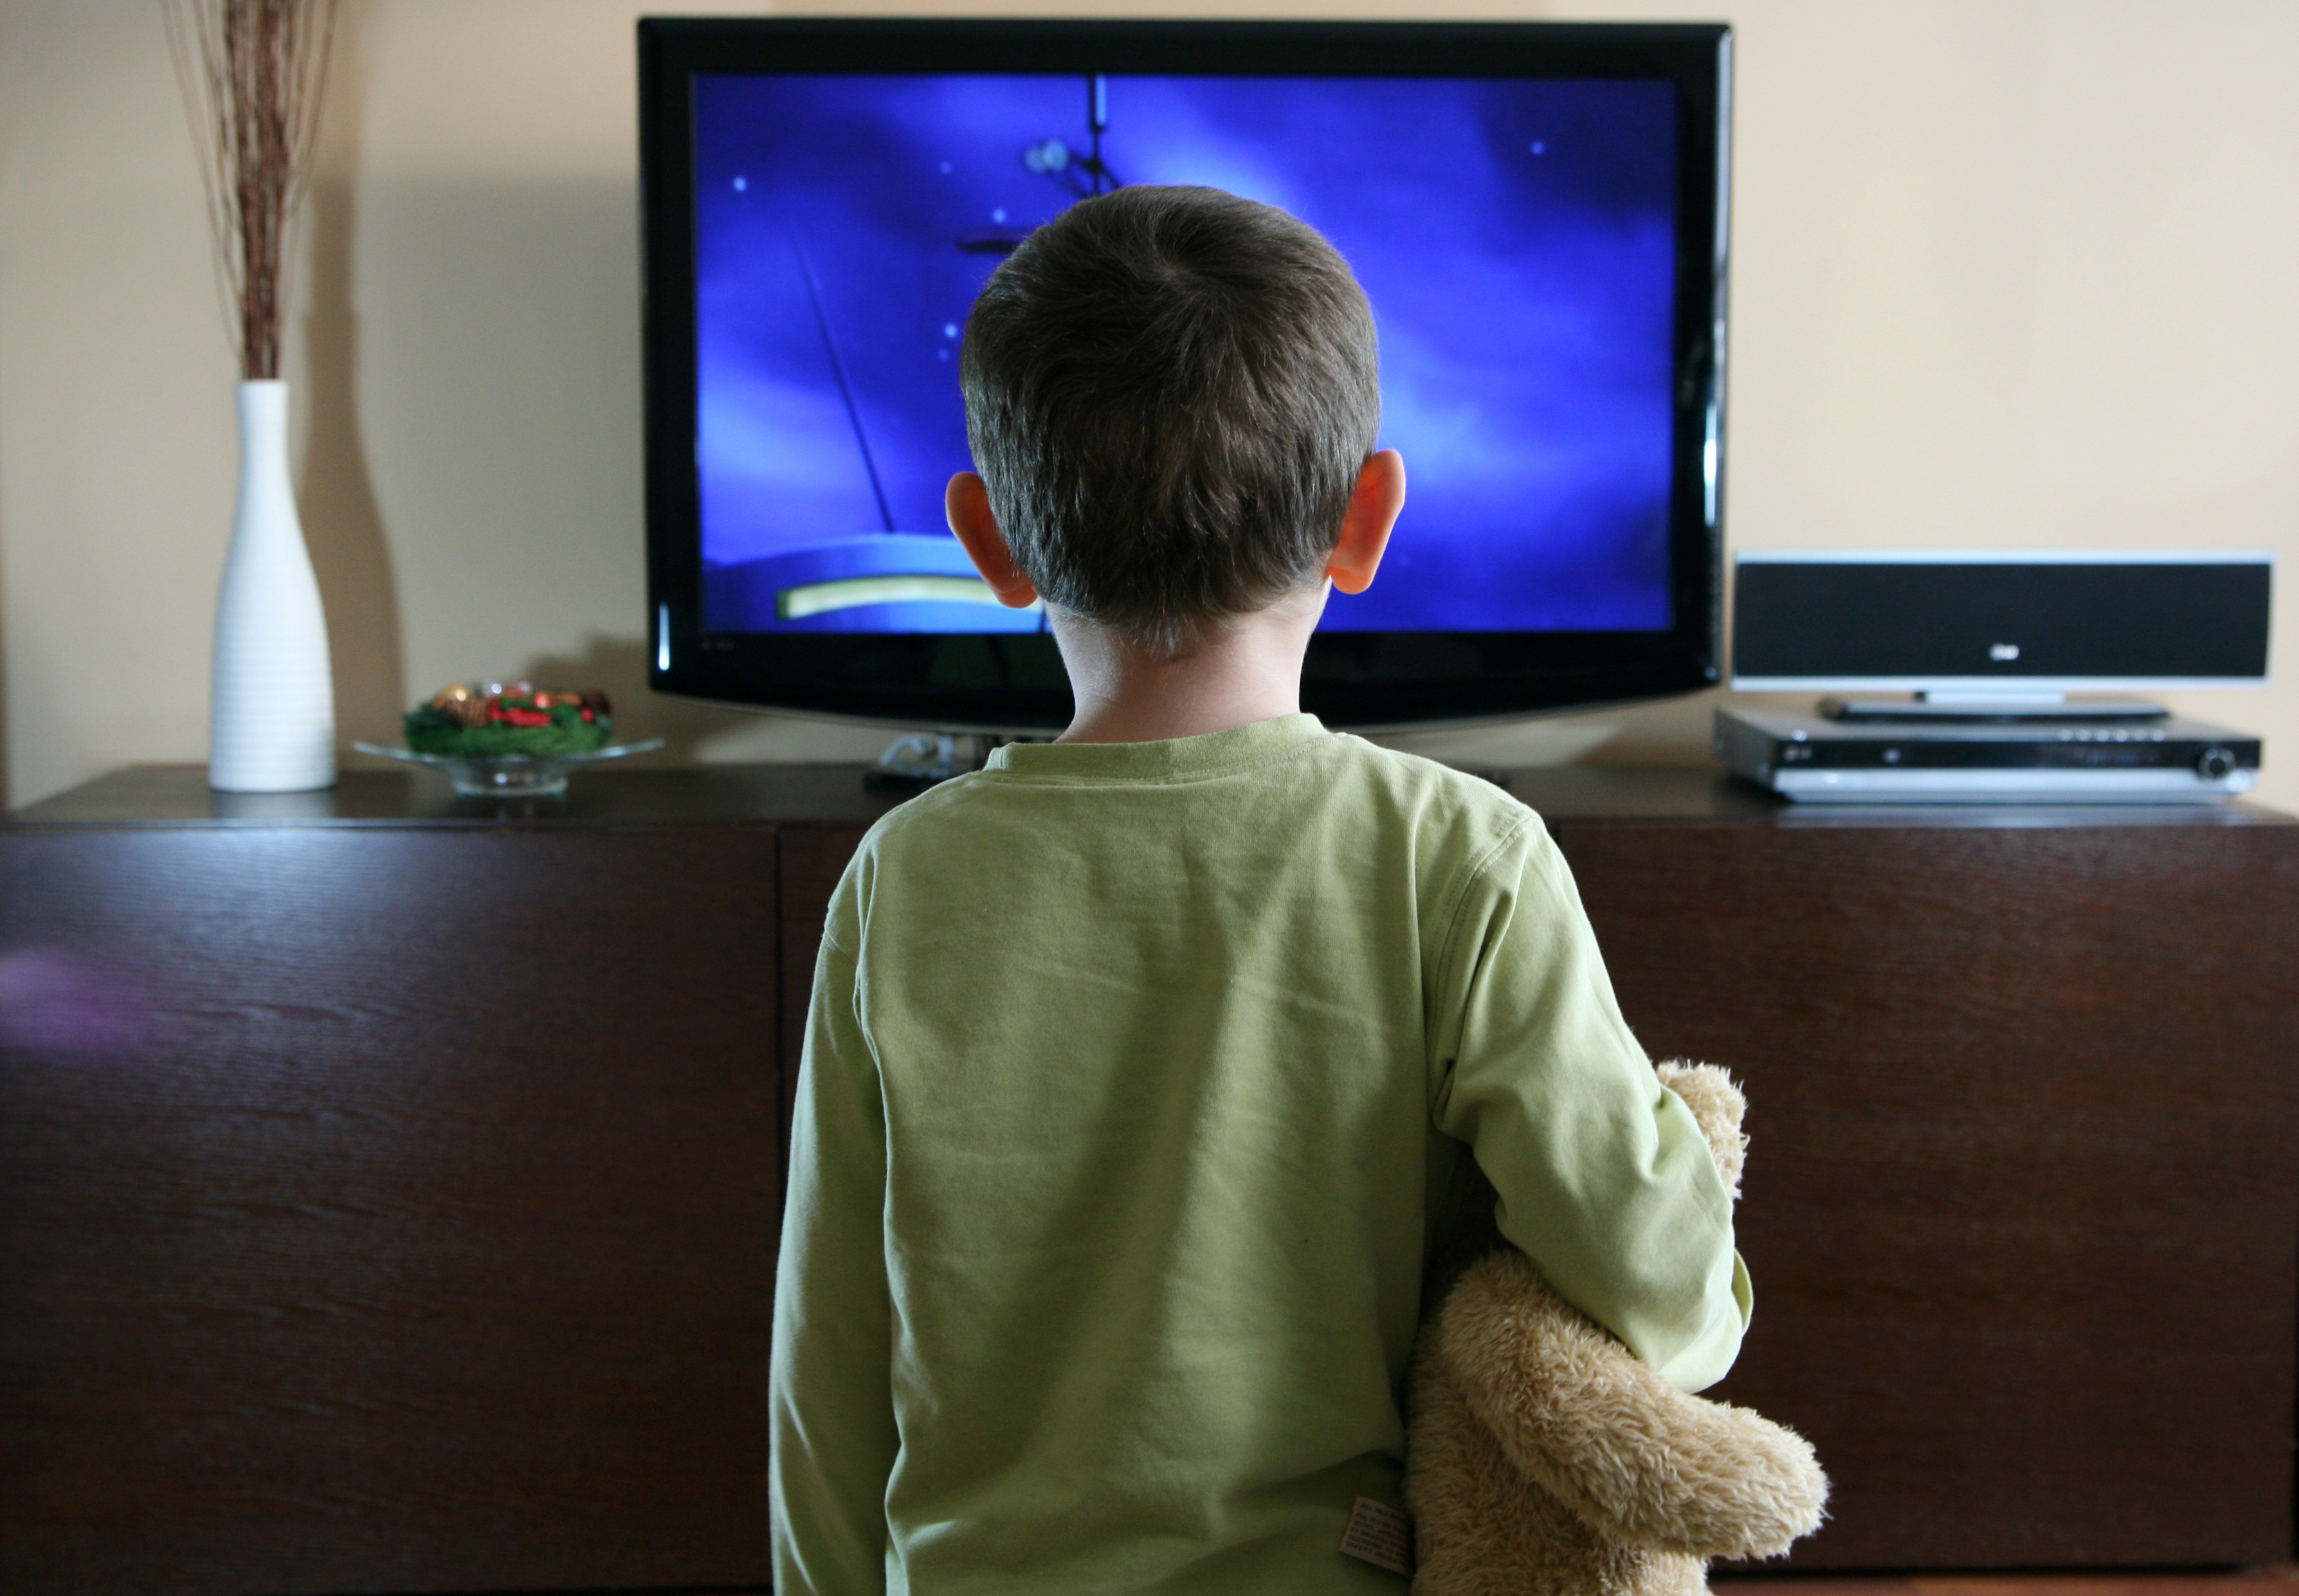 Regarder la télévision et utiliser les écrans est le facteur de mode de vie le plus fortement associé à l'obésité chez l’Enfant